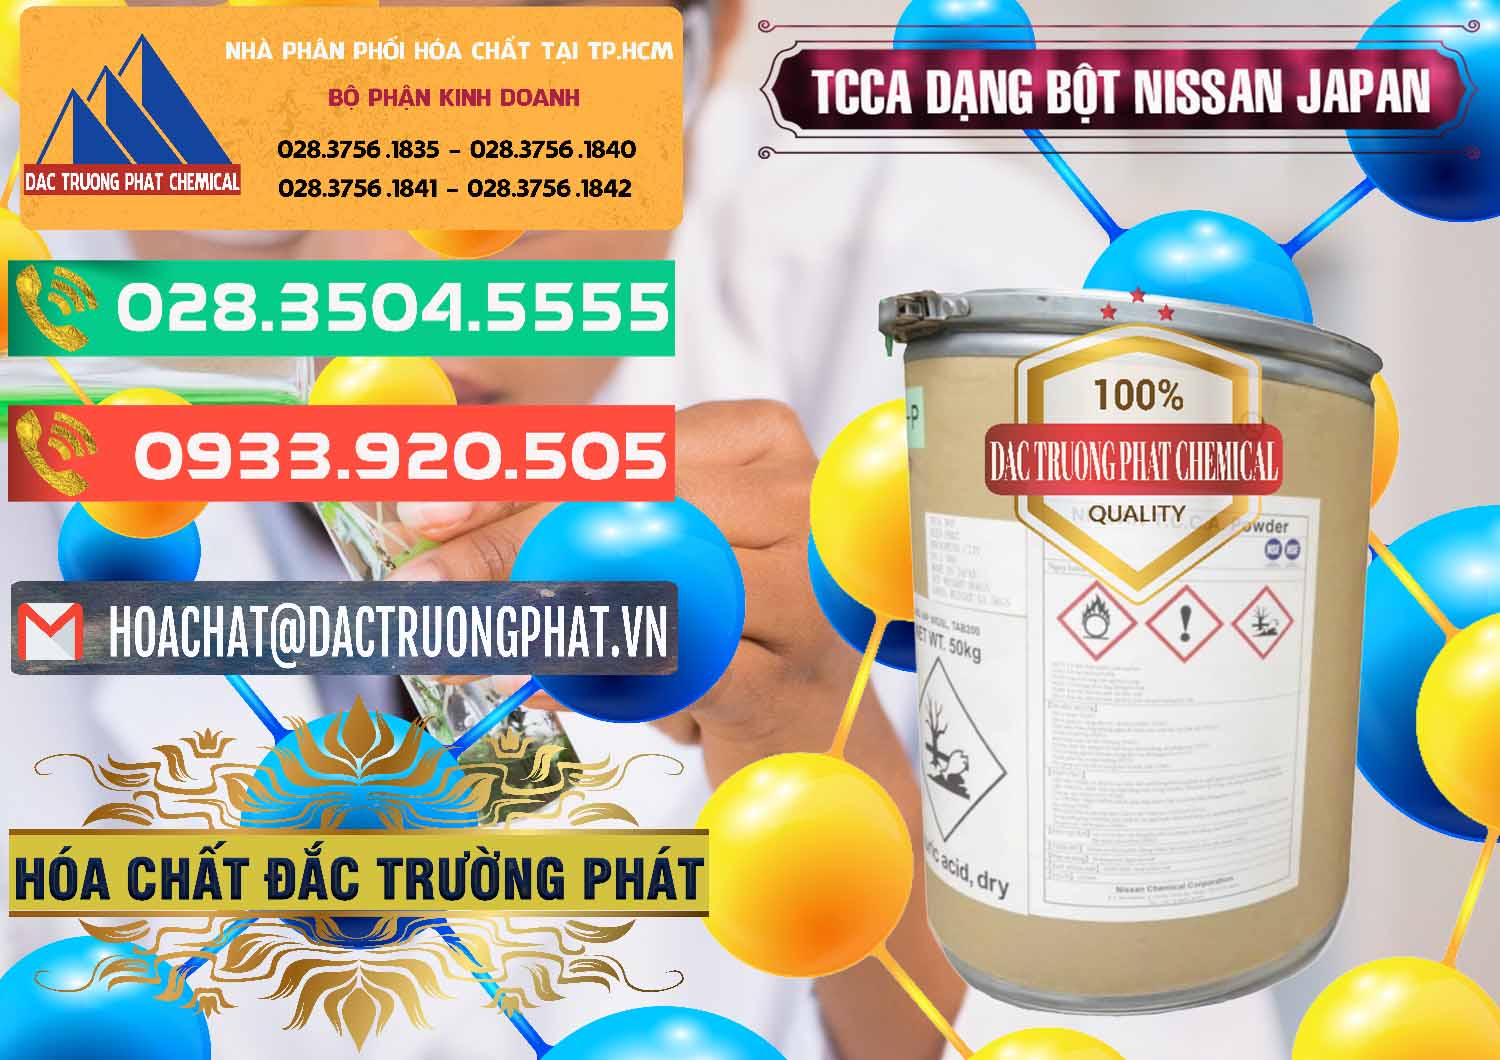 Chuyên nhập khẩu ( bán ) TCCA - Acid Trichloroisocyanuric 90% Dạng Bột Nissan Nhật Bản Japan - 0375 - Cty nhập khẩu & cung cấp hóa chất tại TP.HCM - congtyhoachat.com.vn